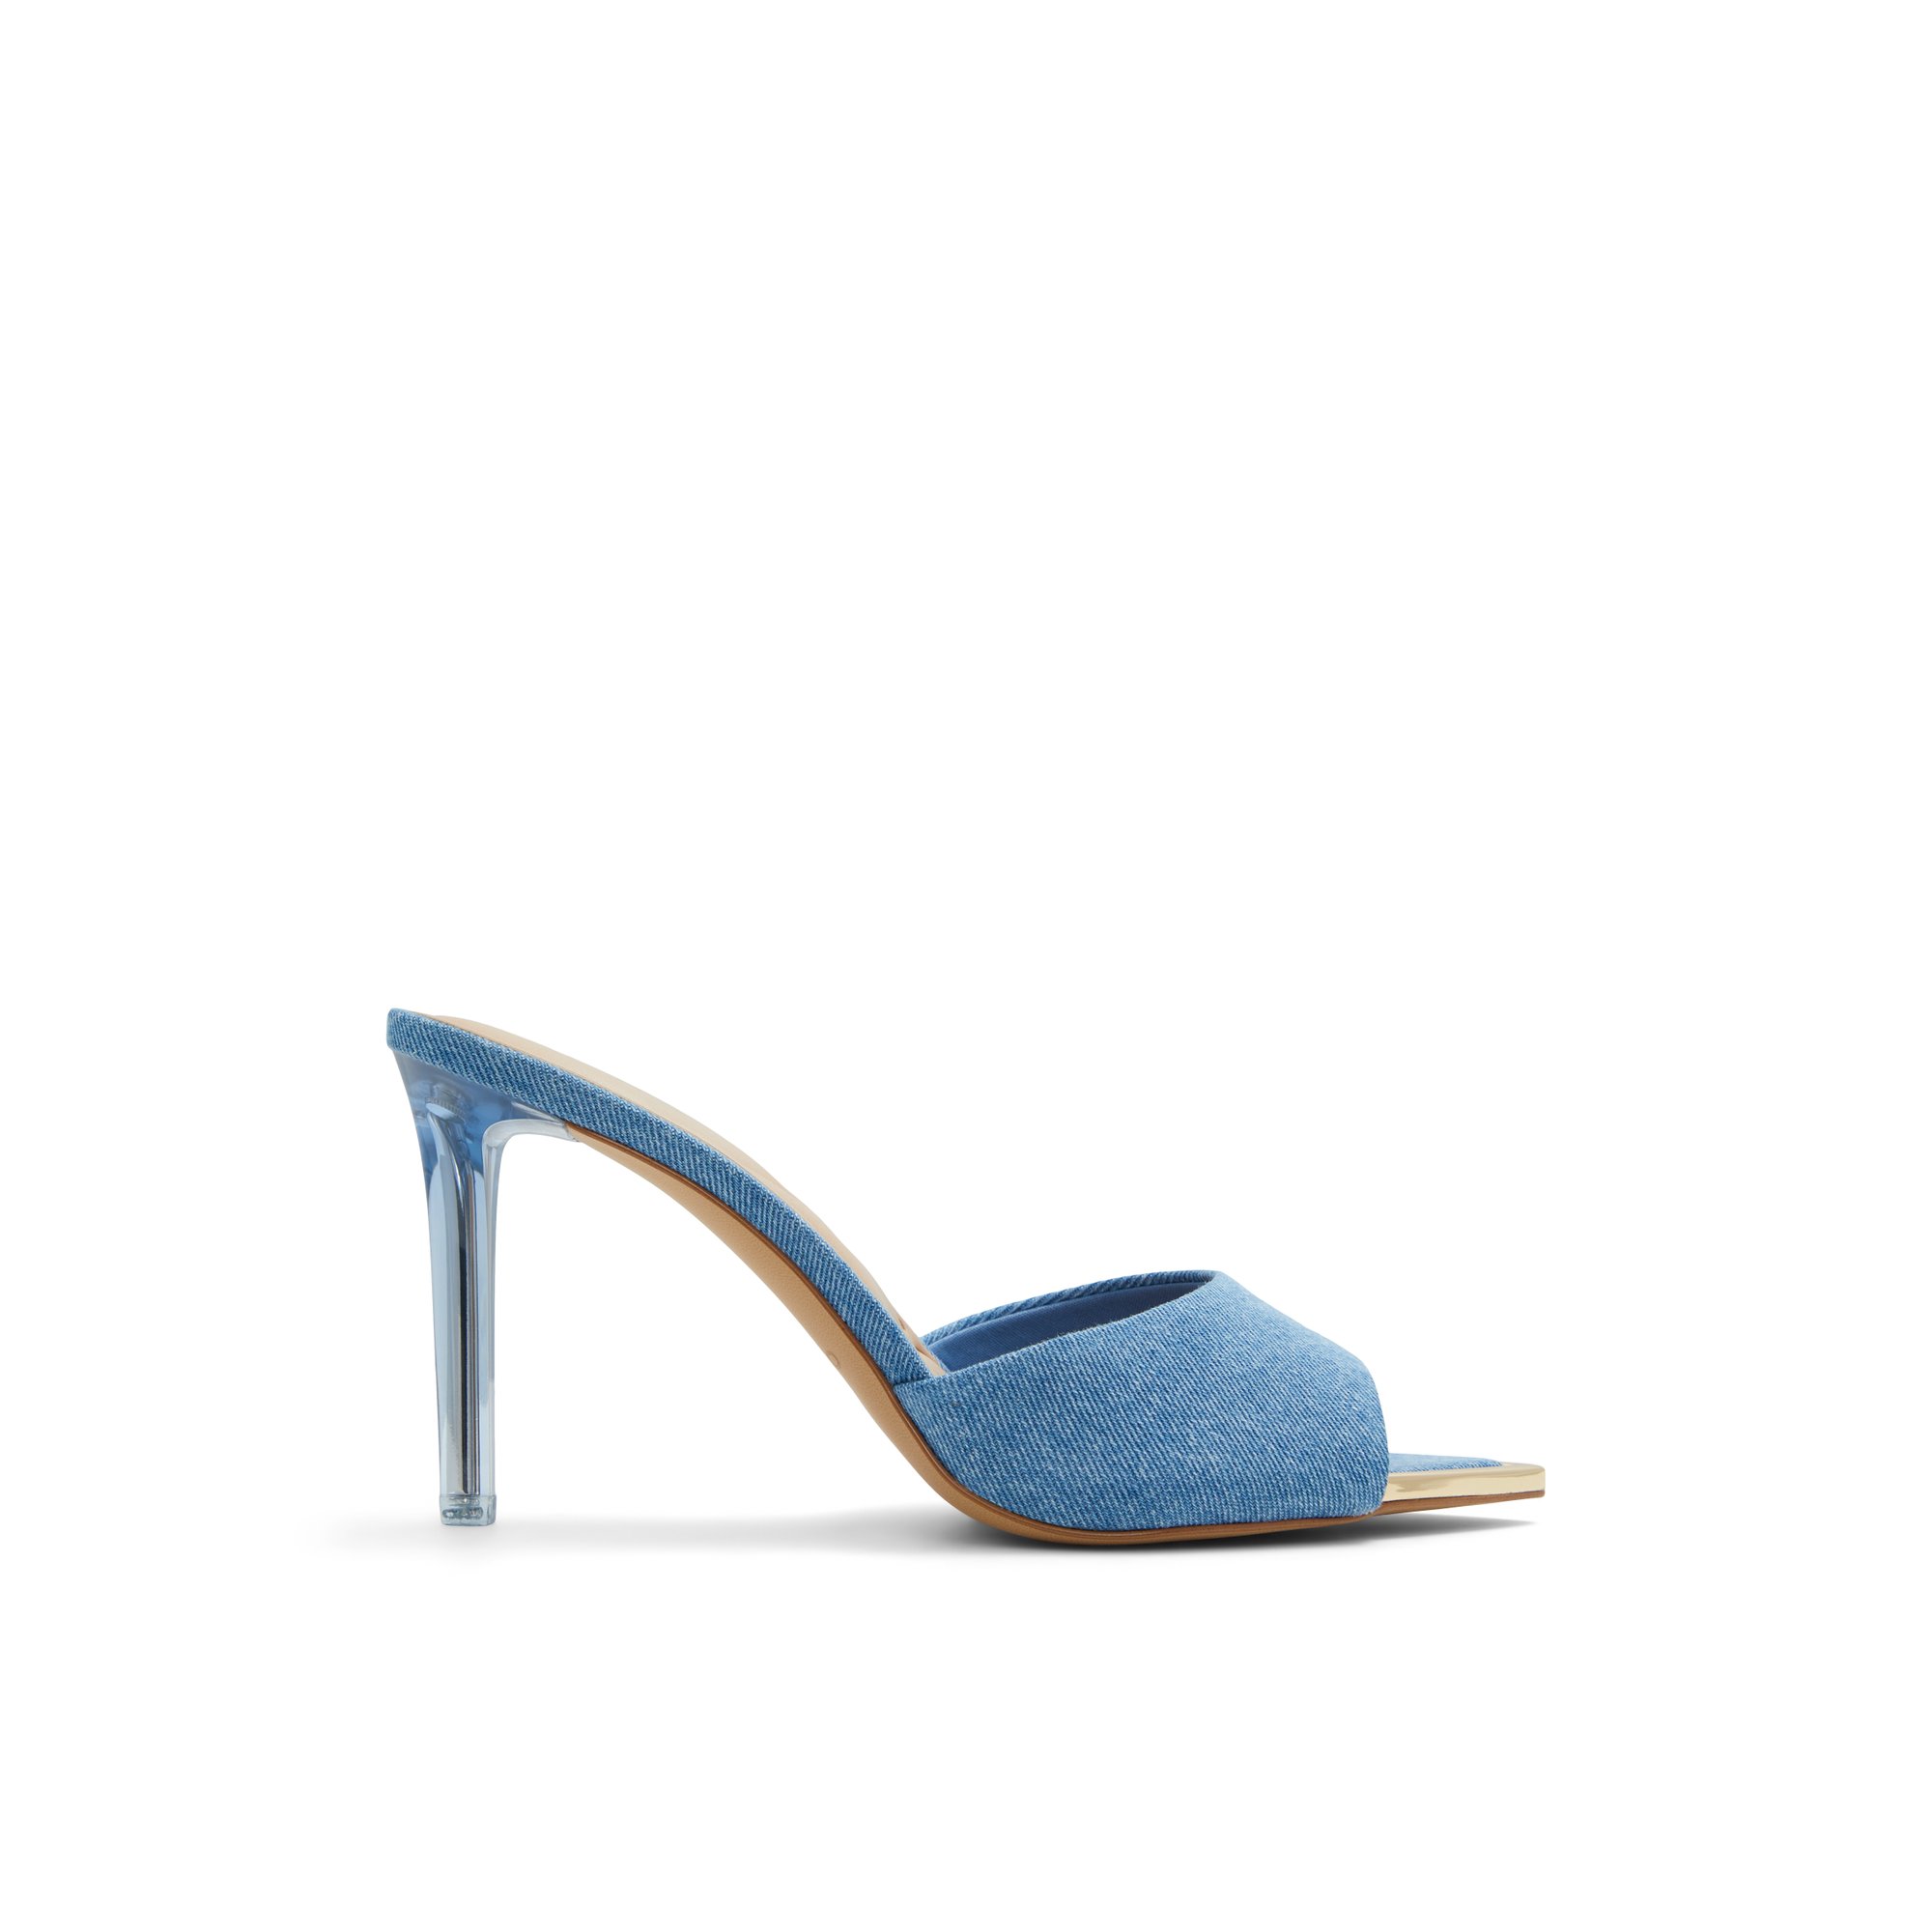 ALDO Anniebrilden - Women's Sandals Heeled Mules - Blue